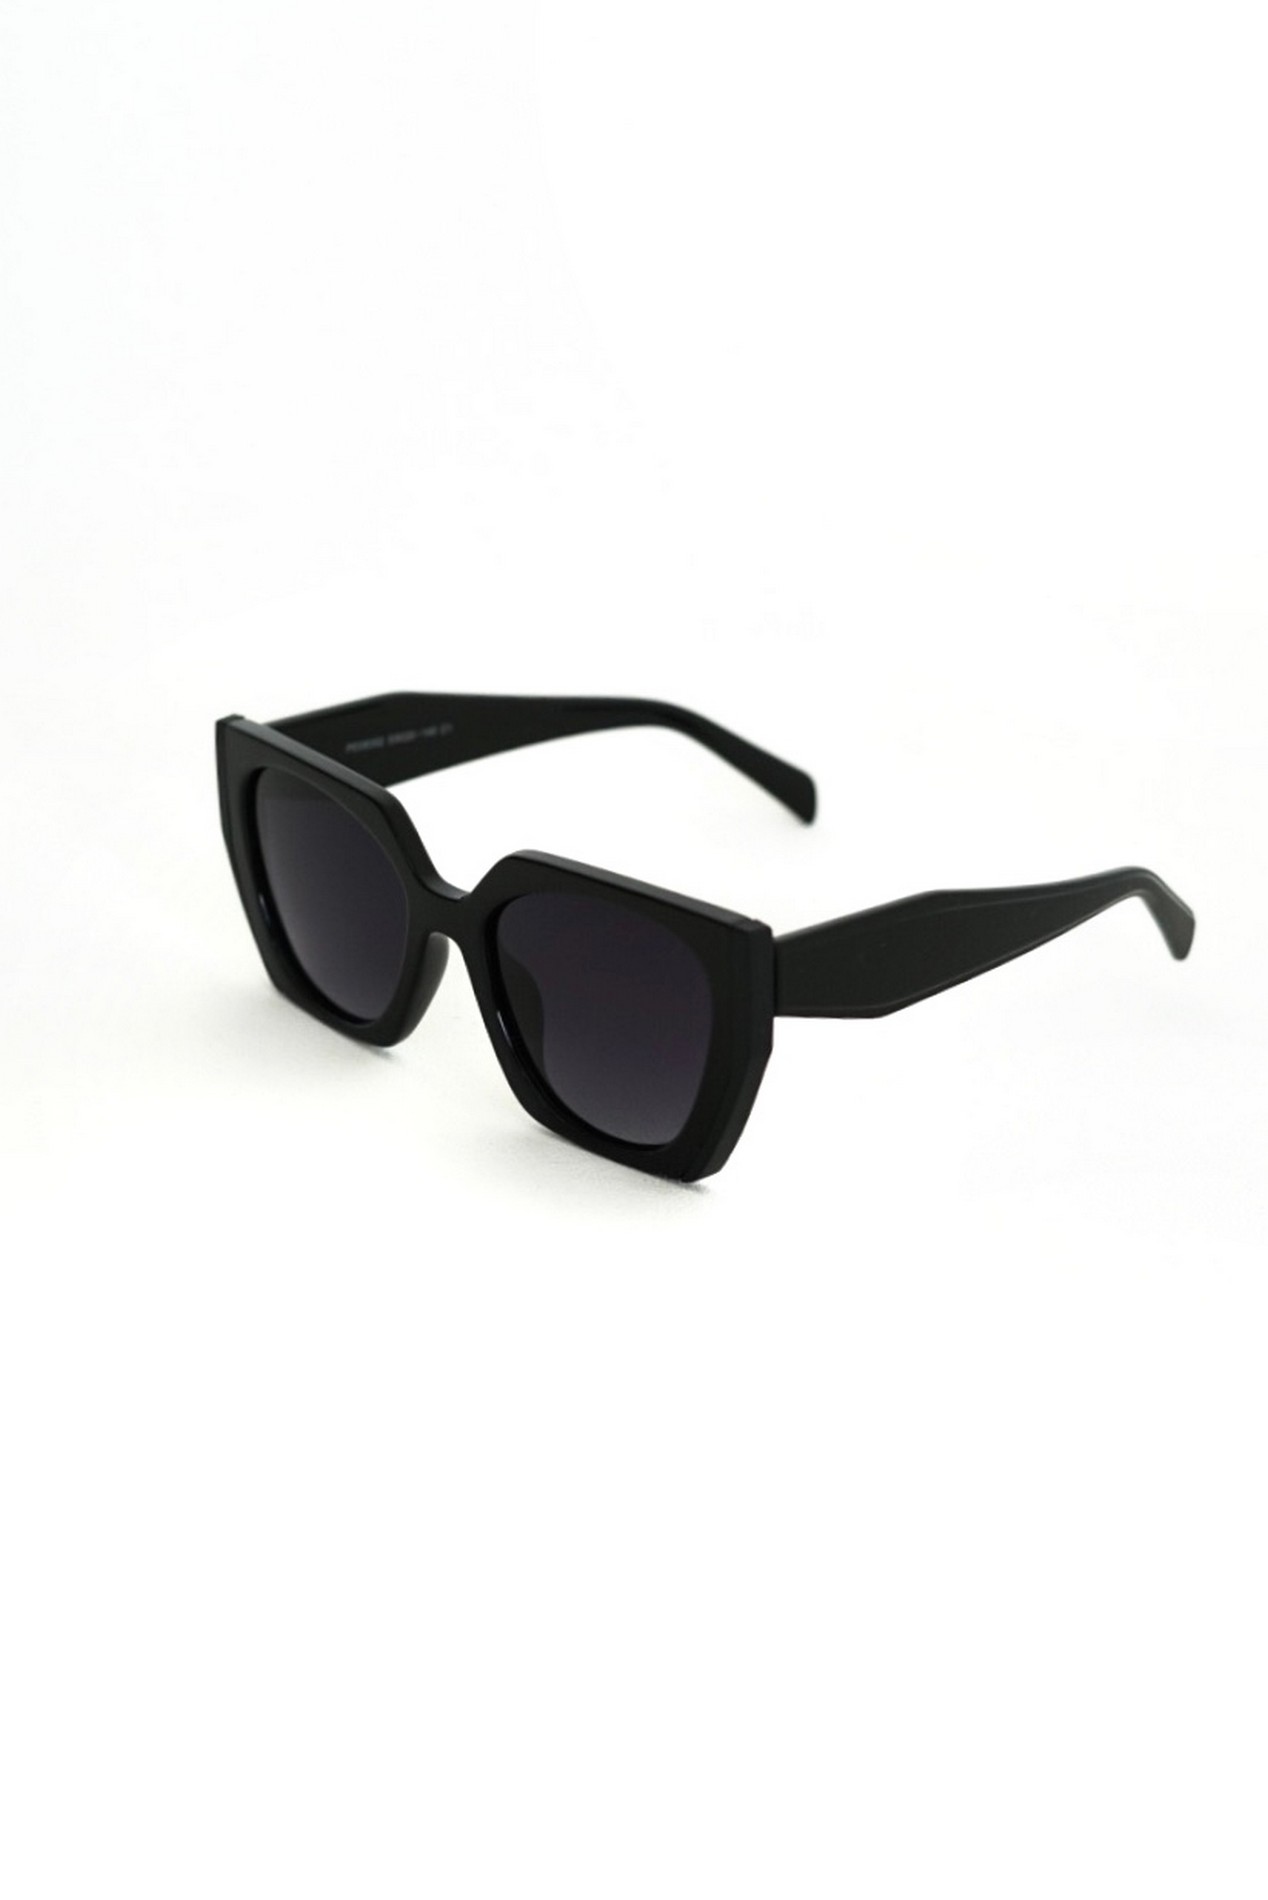 

Сонцезахисні окуляри клабмастер чорні, A180401